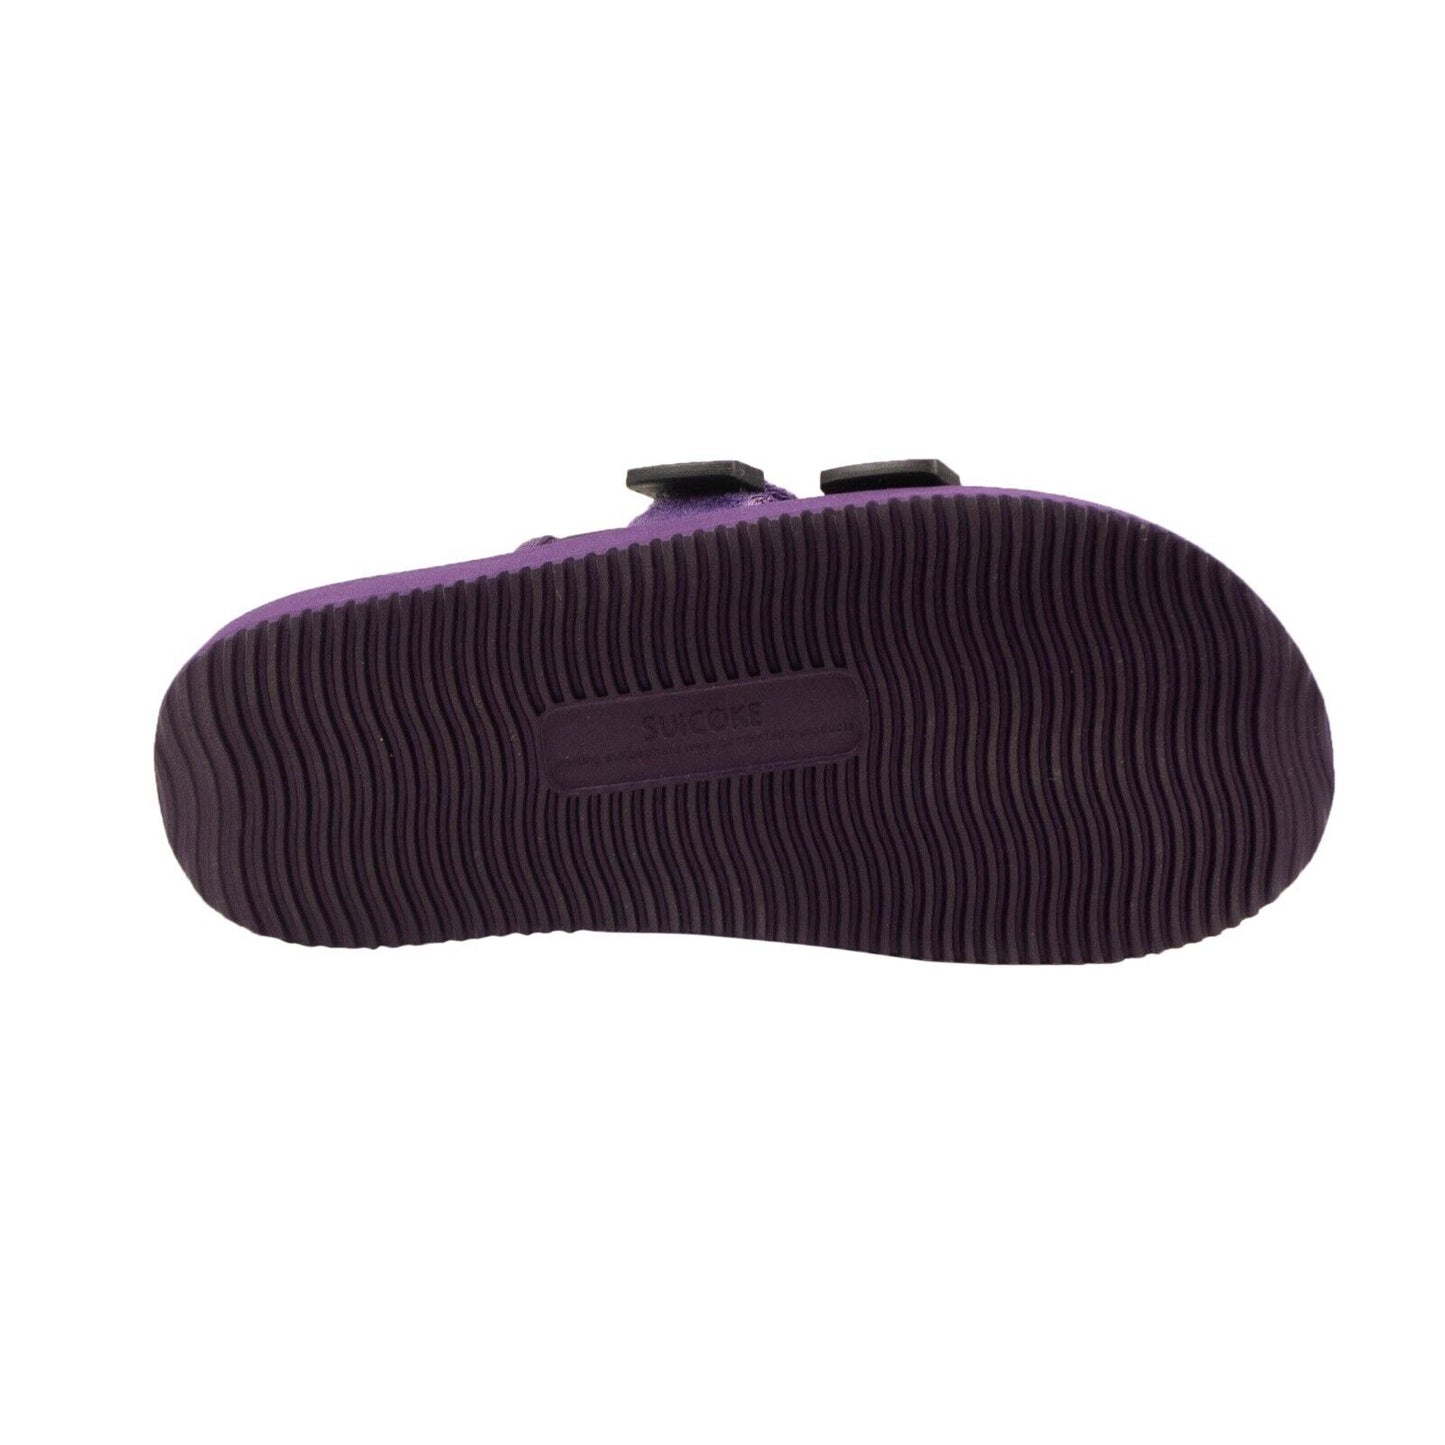 Suicoke Moto Cab Slides - Purple